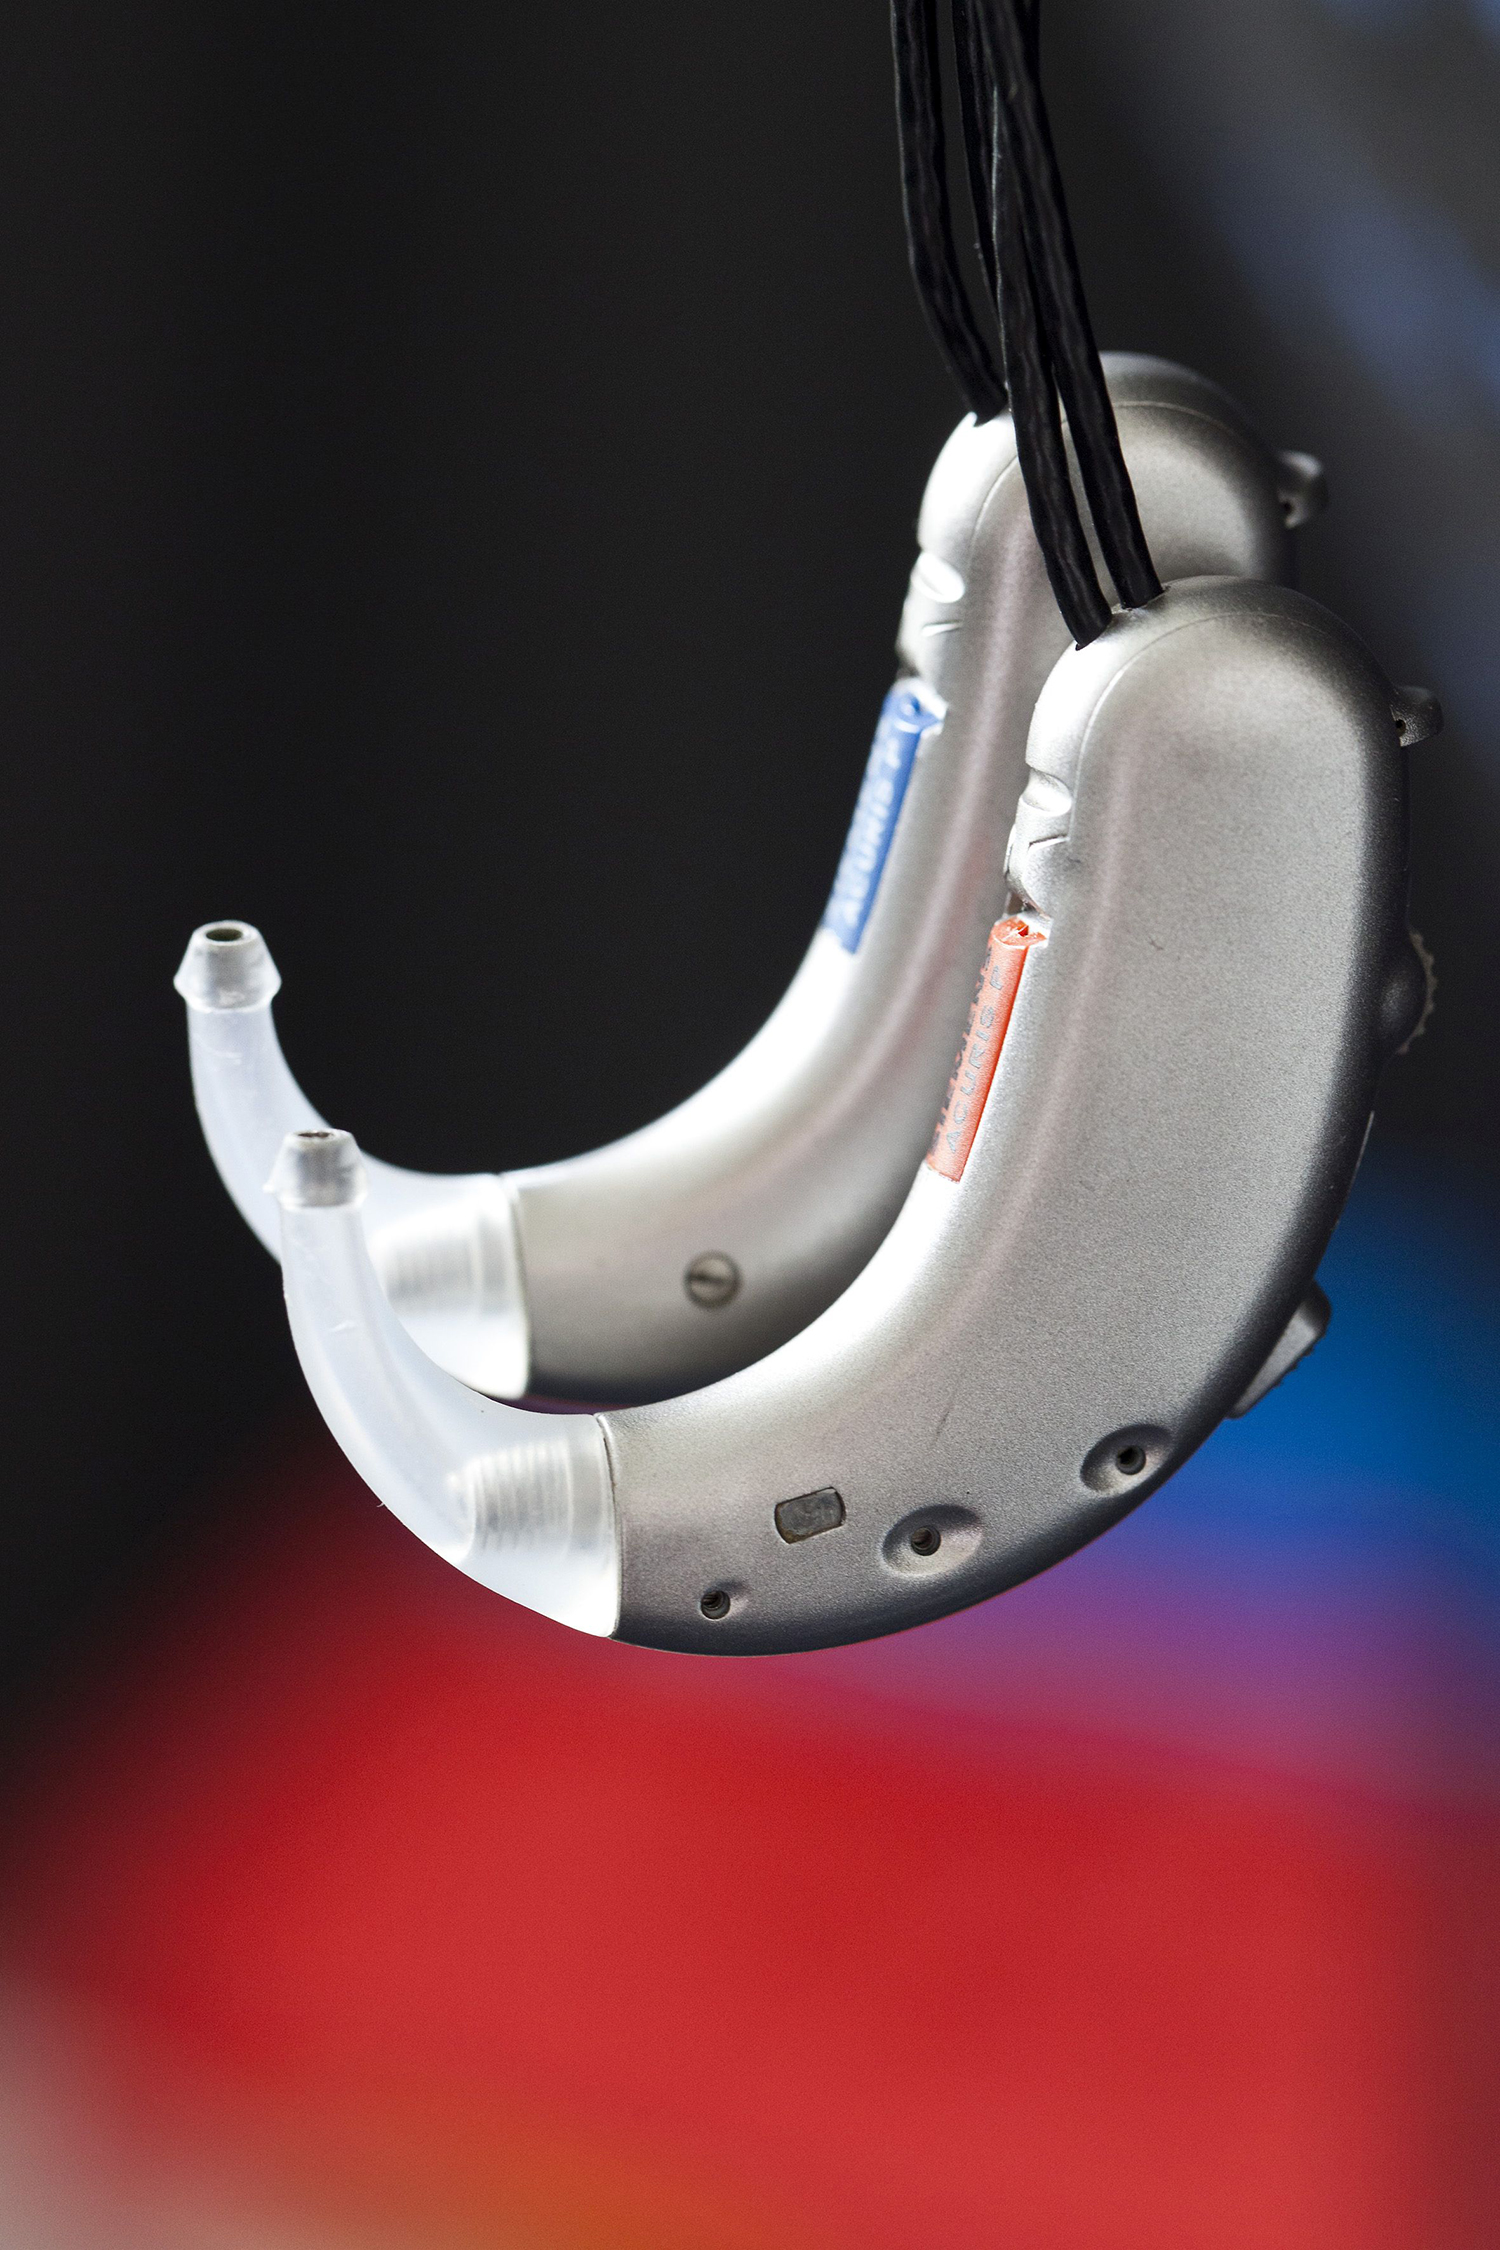 Das binaurale Hörgerät ermöglicht erstmals einen räumlichen Höreindruck. 